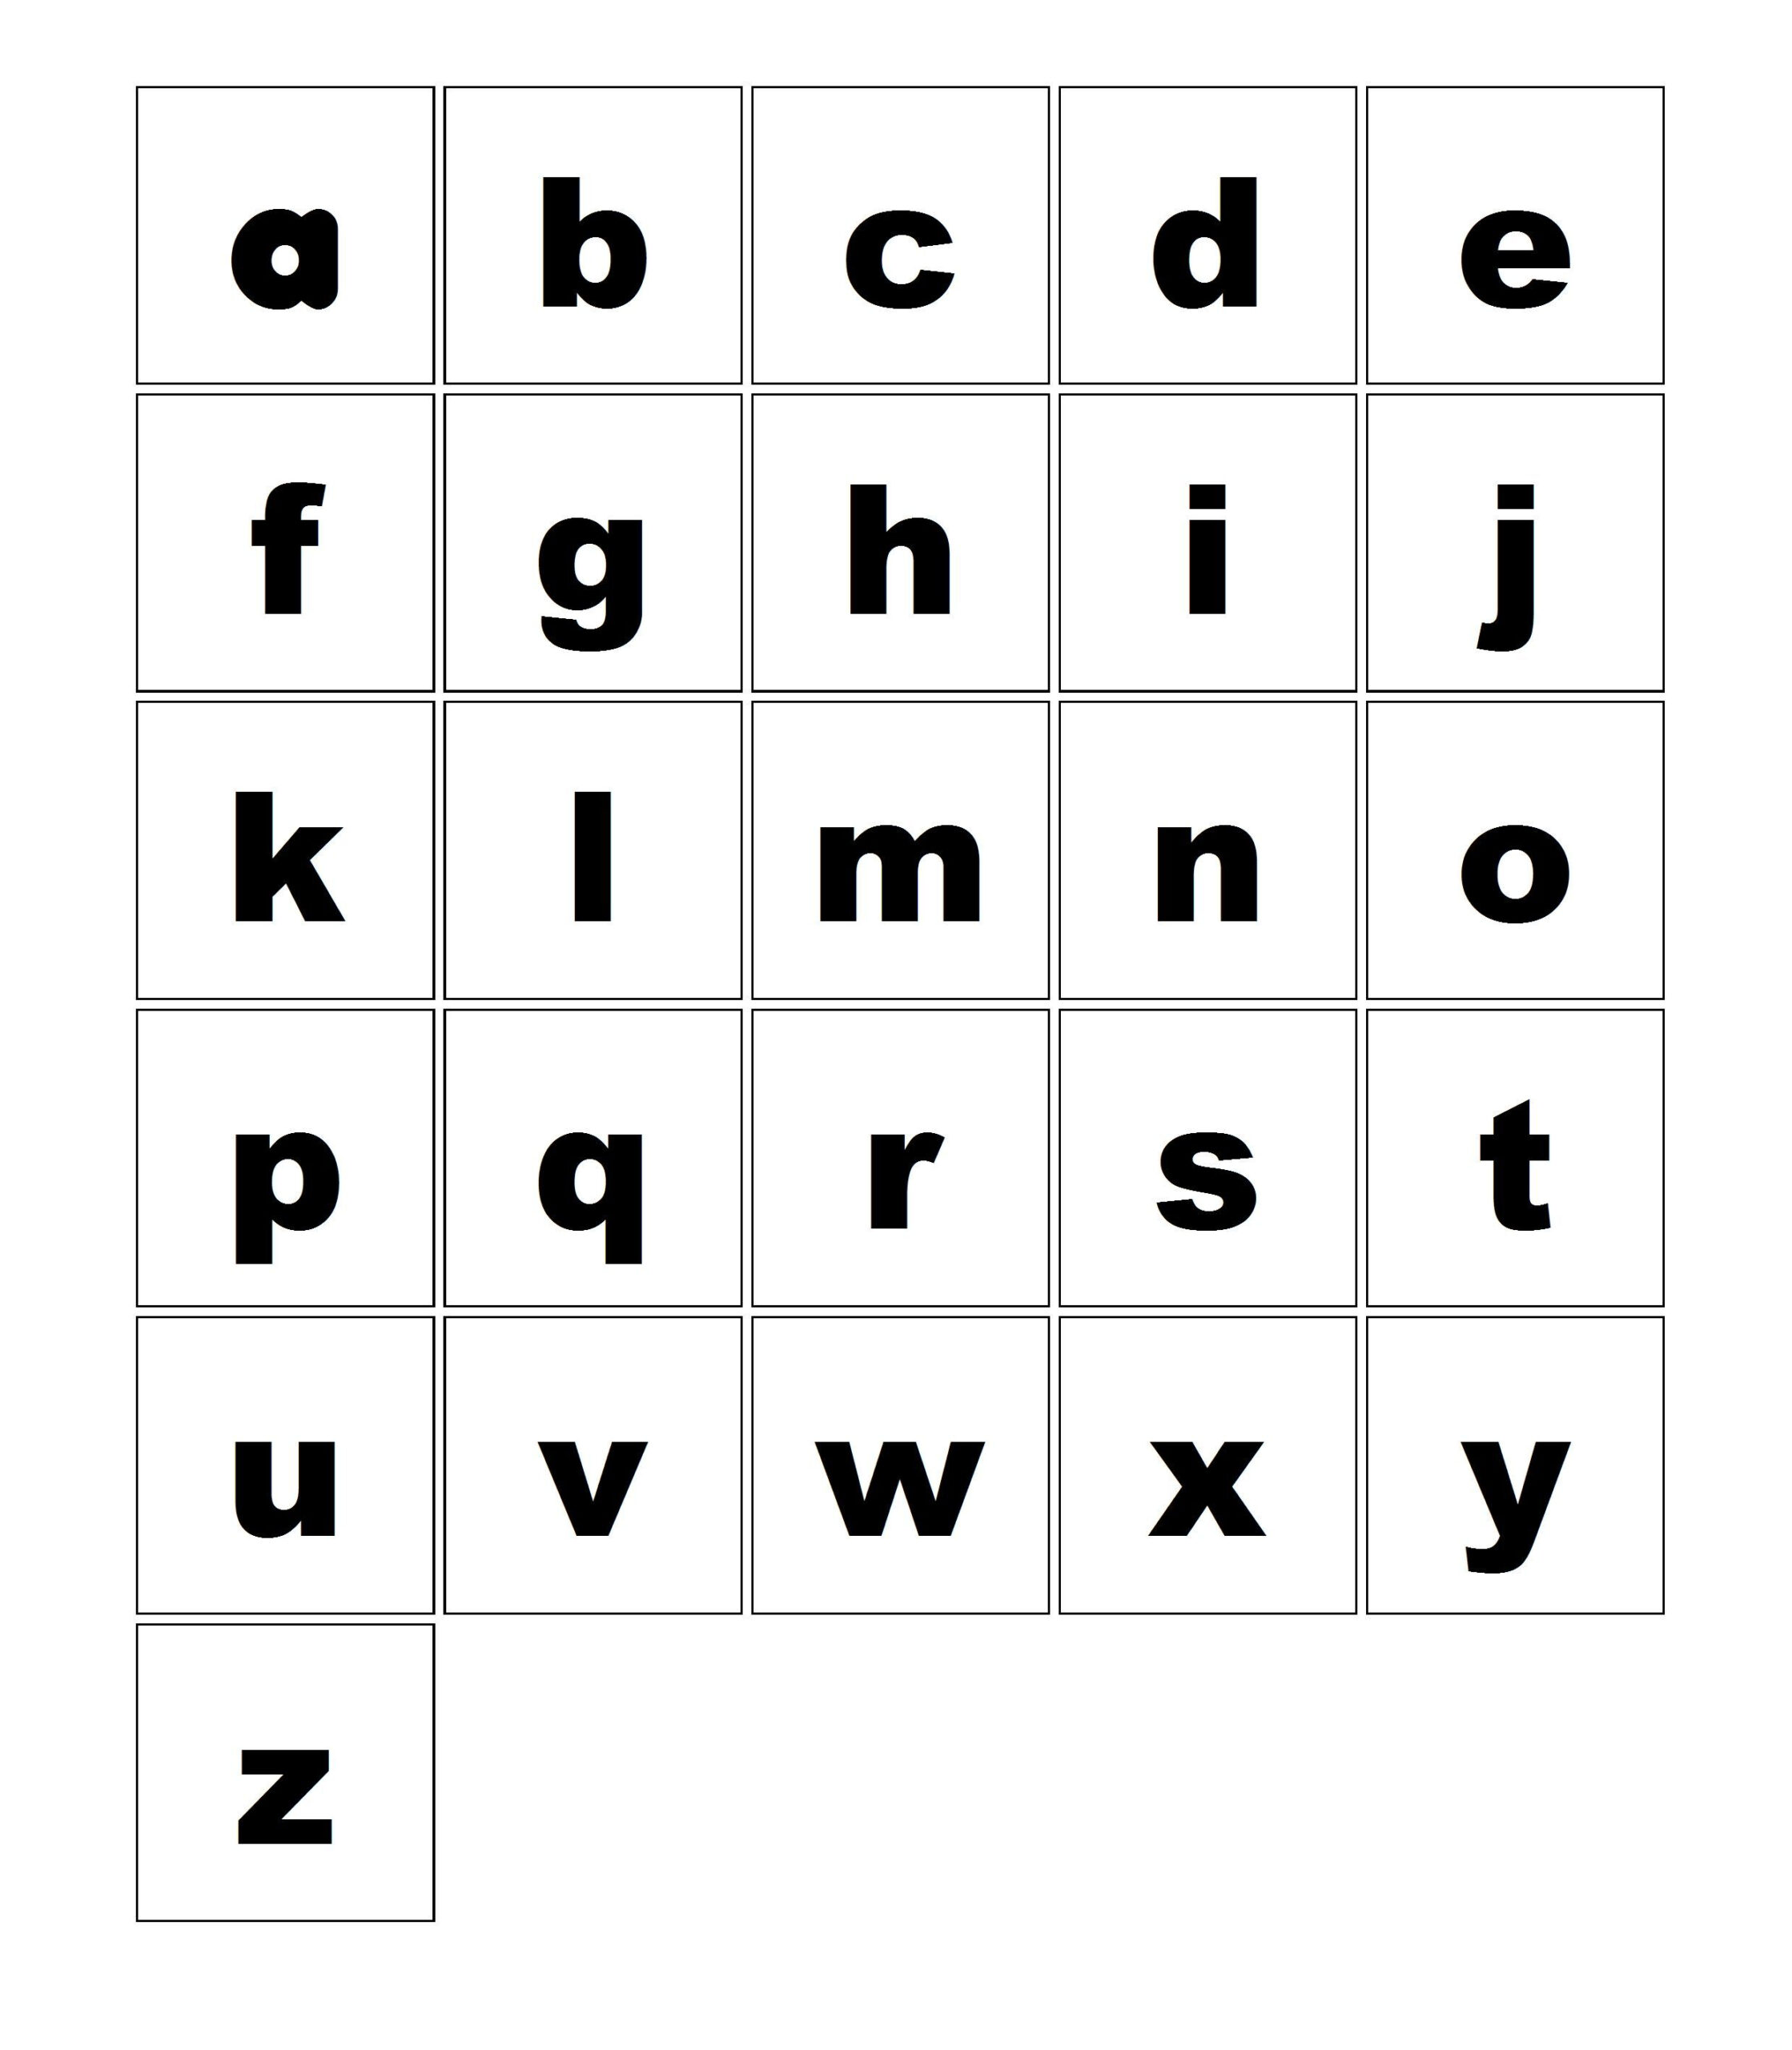 Télécharger Alphabet Cursive Minuscule A Imprimer Pdf